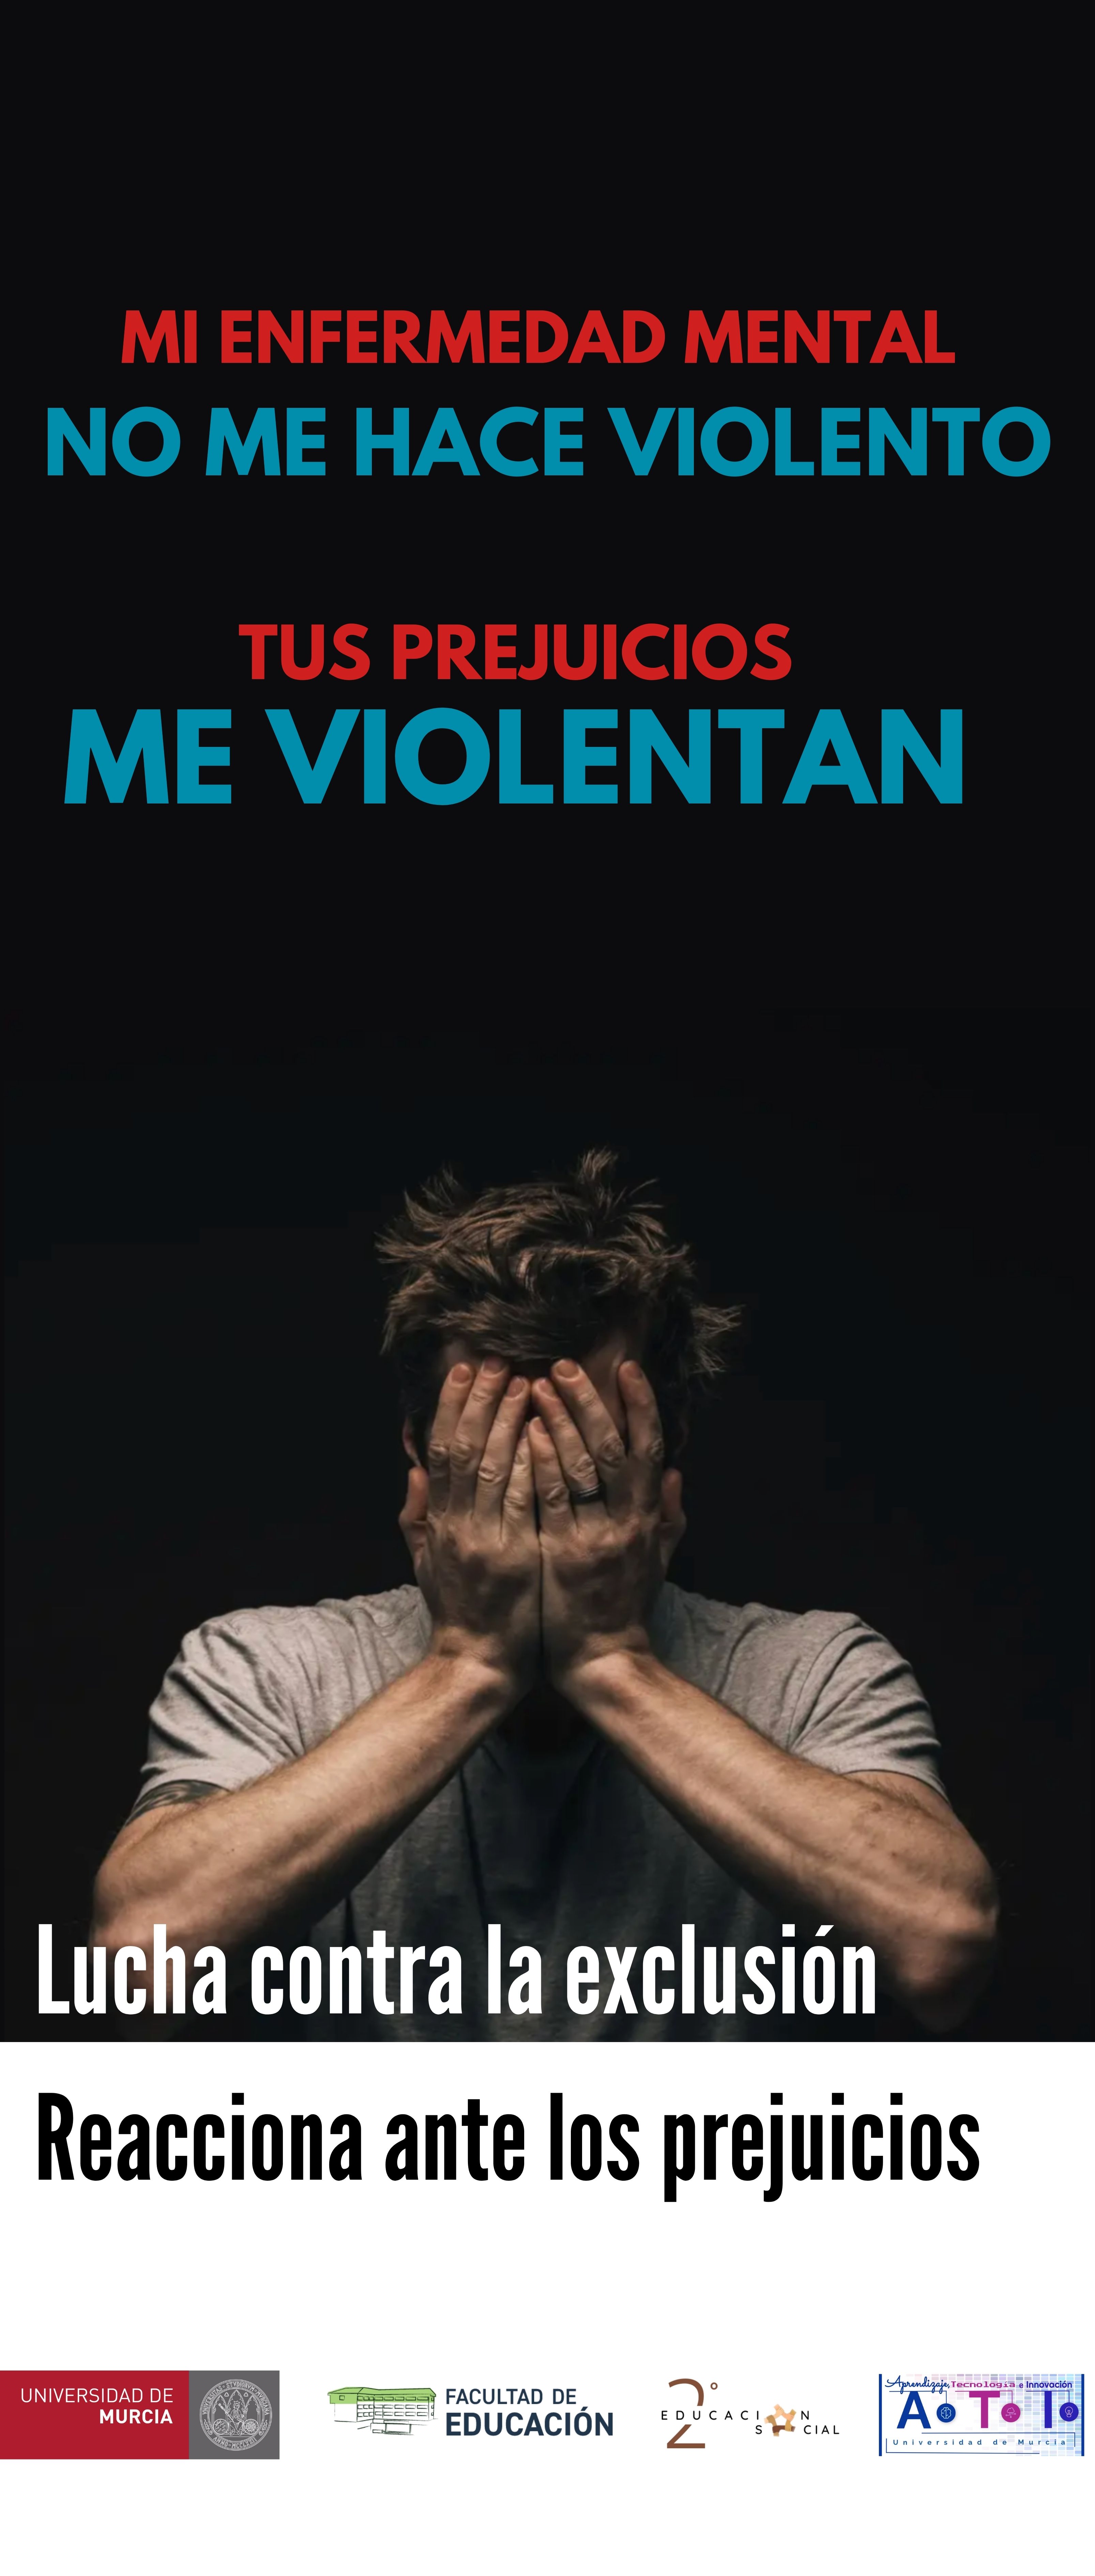 Título del cartel: Mi enfermedad mental no me hace violento. Tus prejuicios me violentan